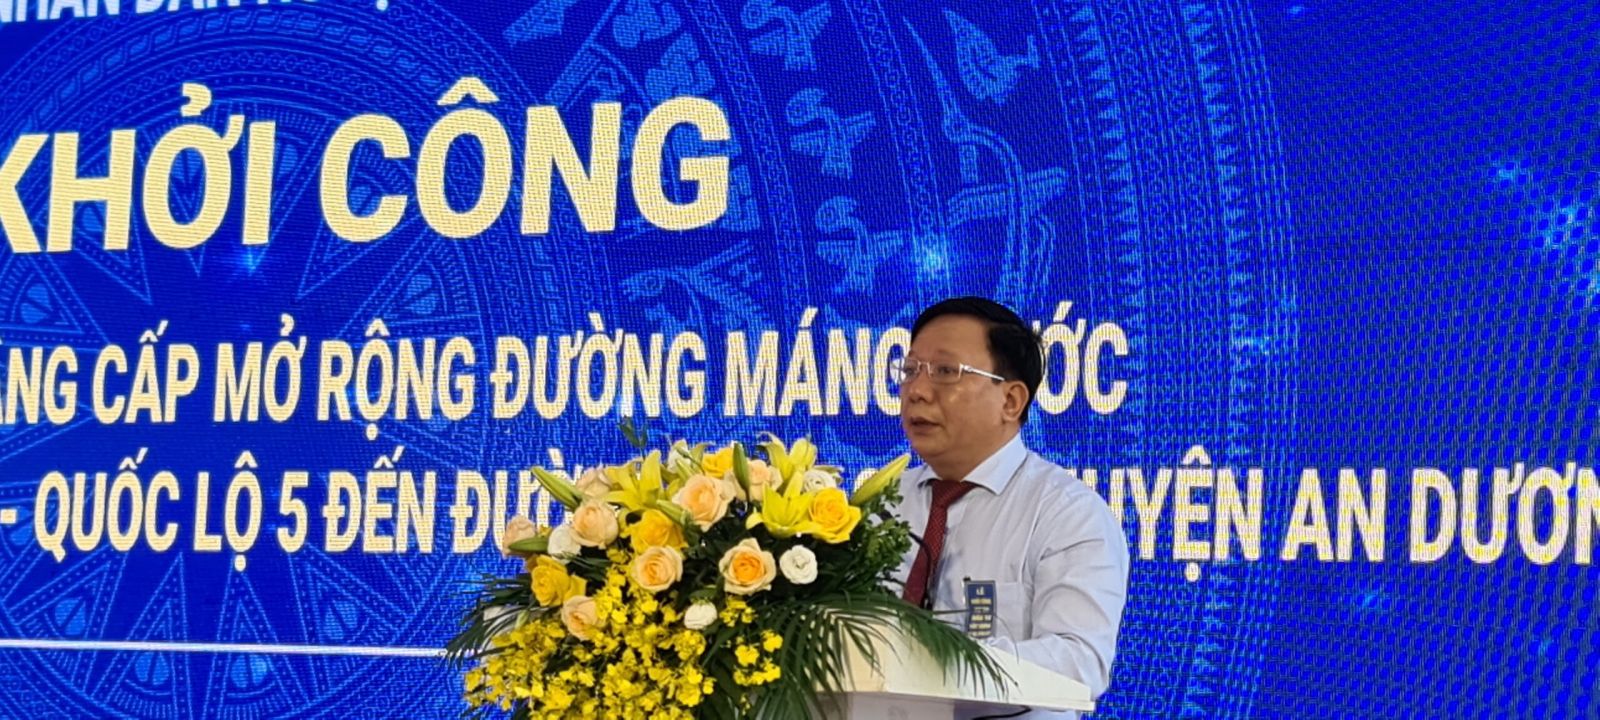 Phó chủ tich UBND TP Nguyễn Đức Thọ phát biểu tại buổi lễ.